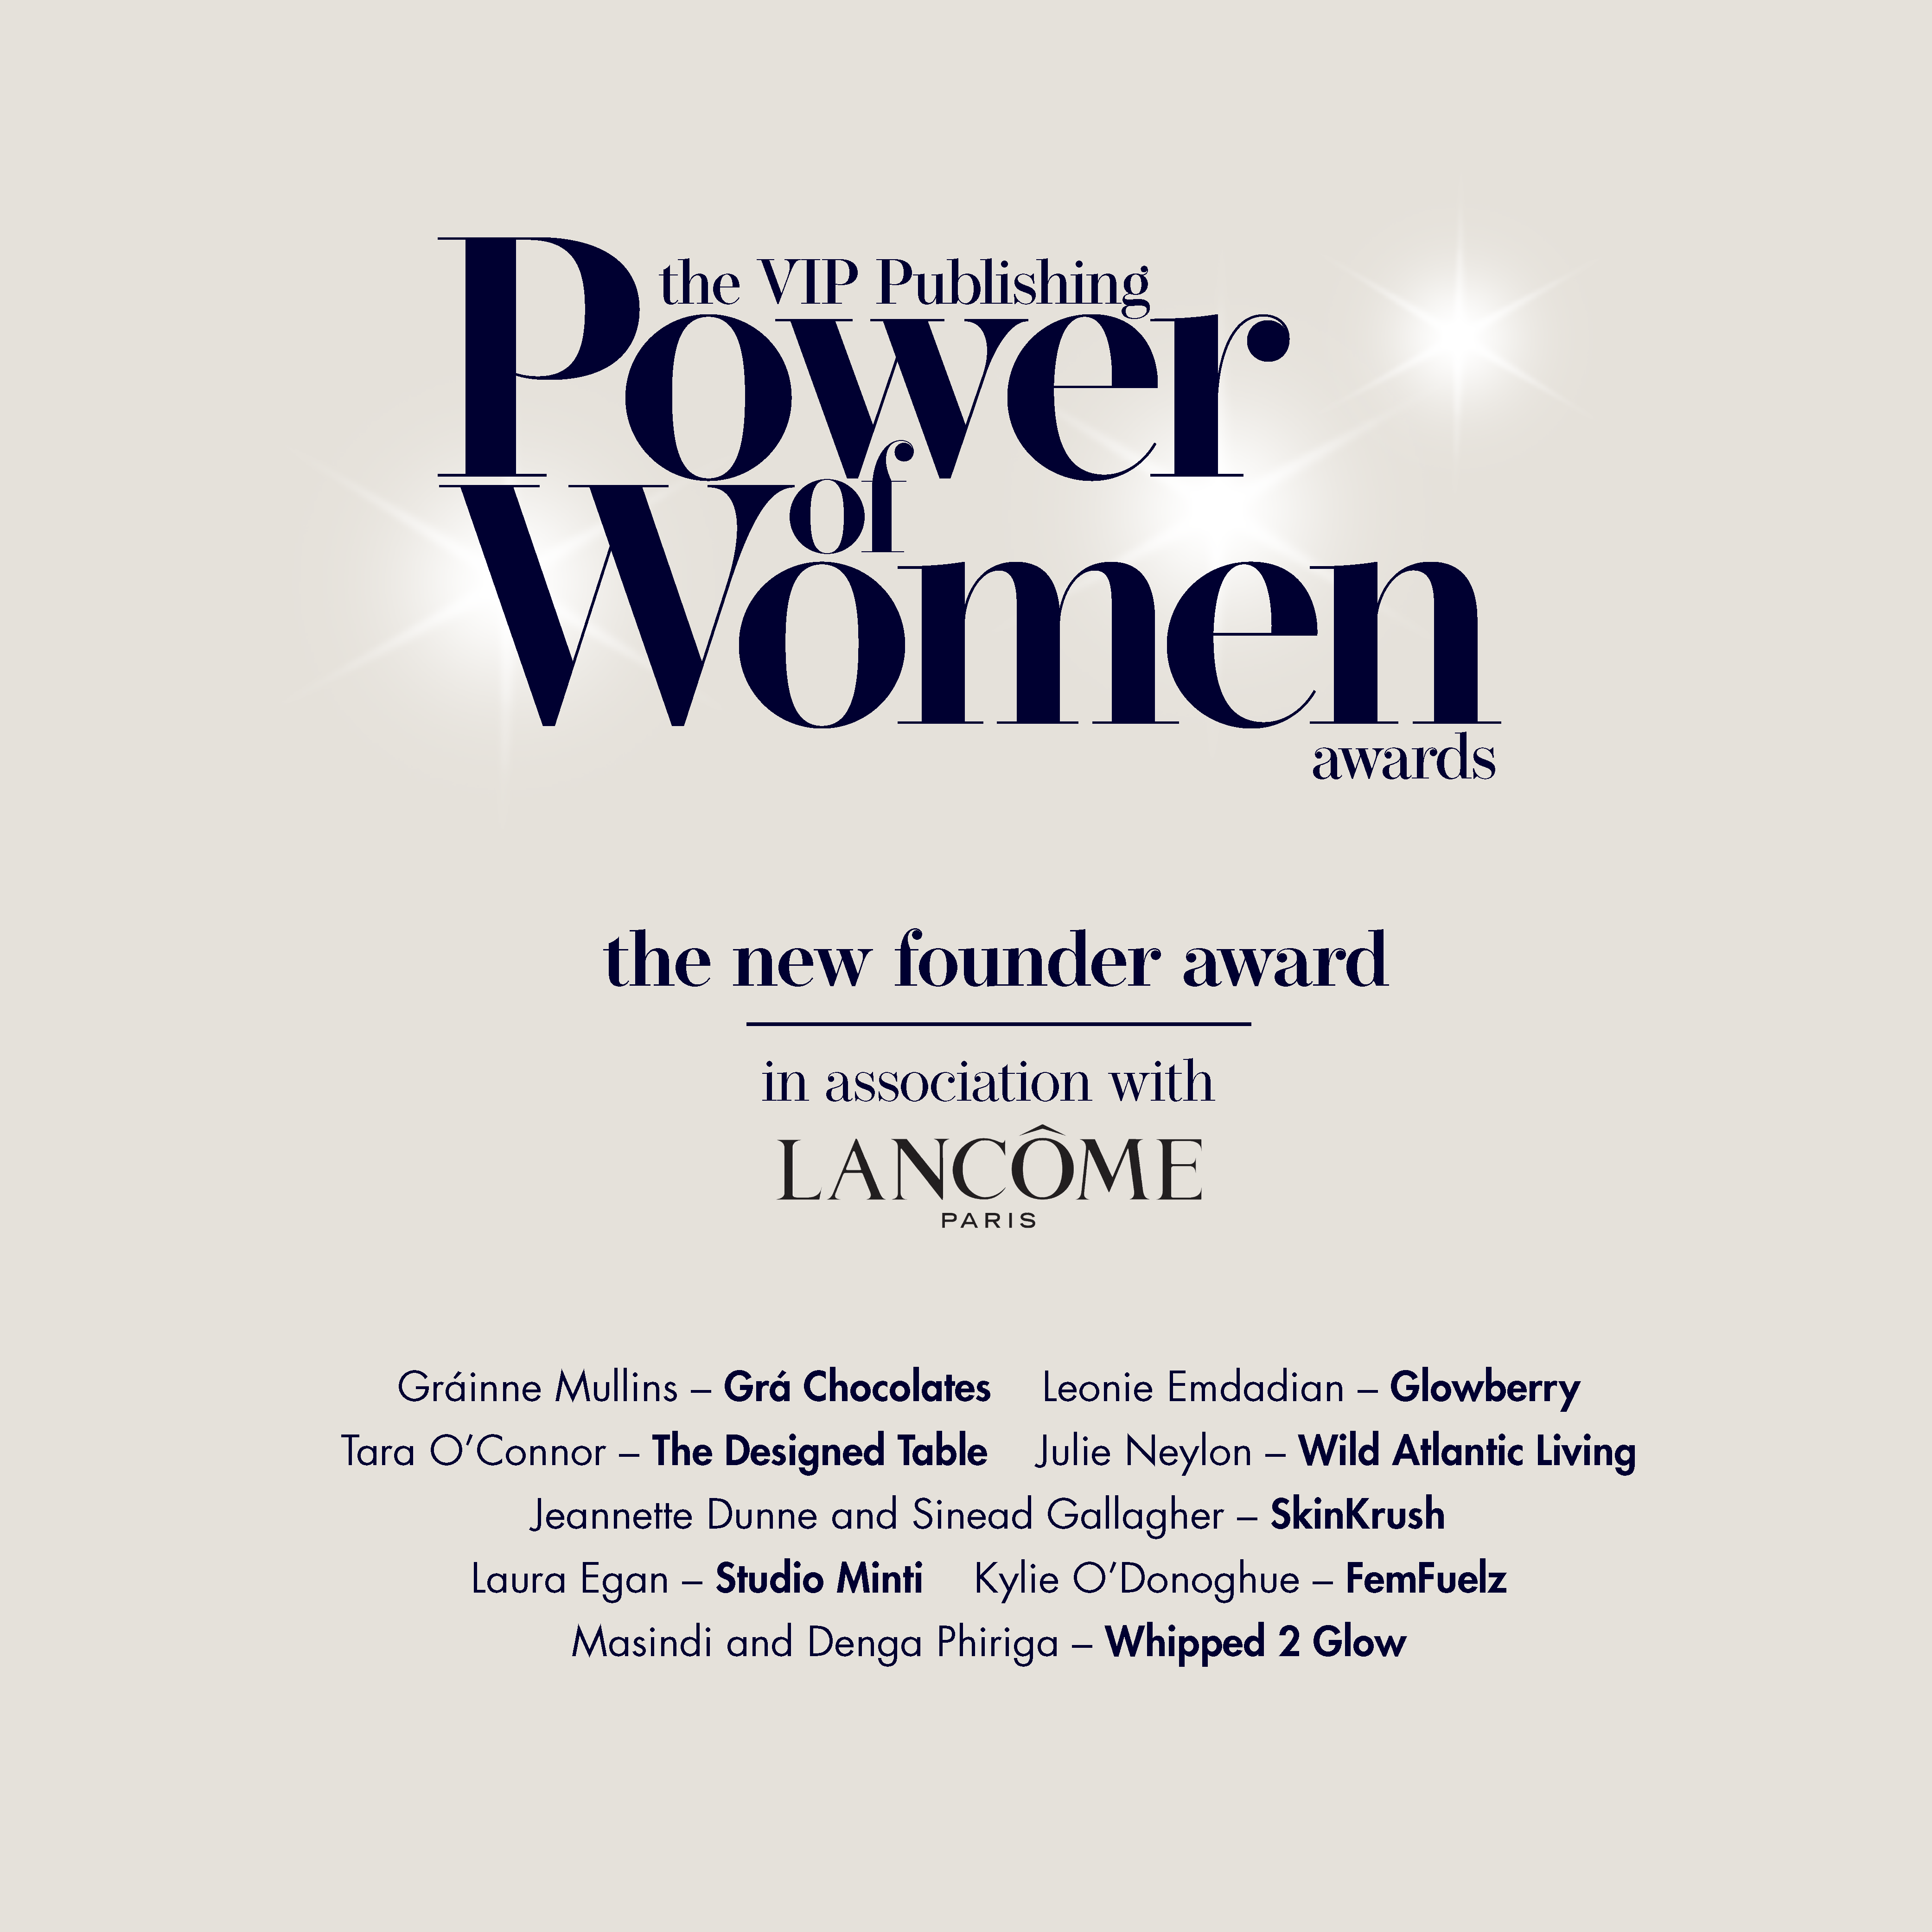 Power of Women Awards